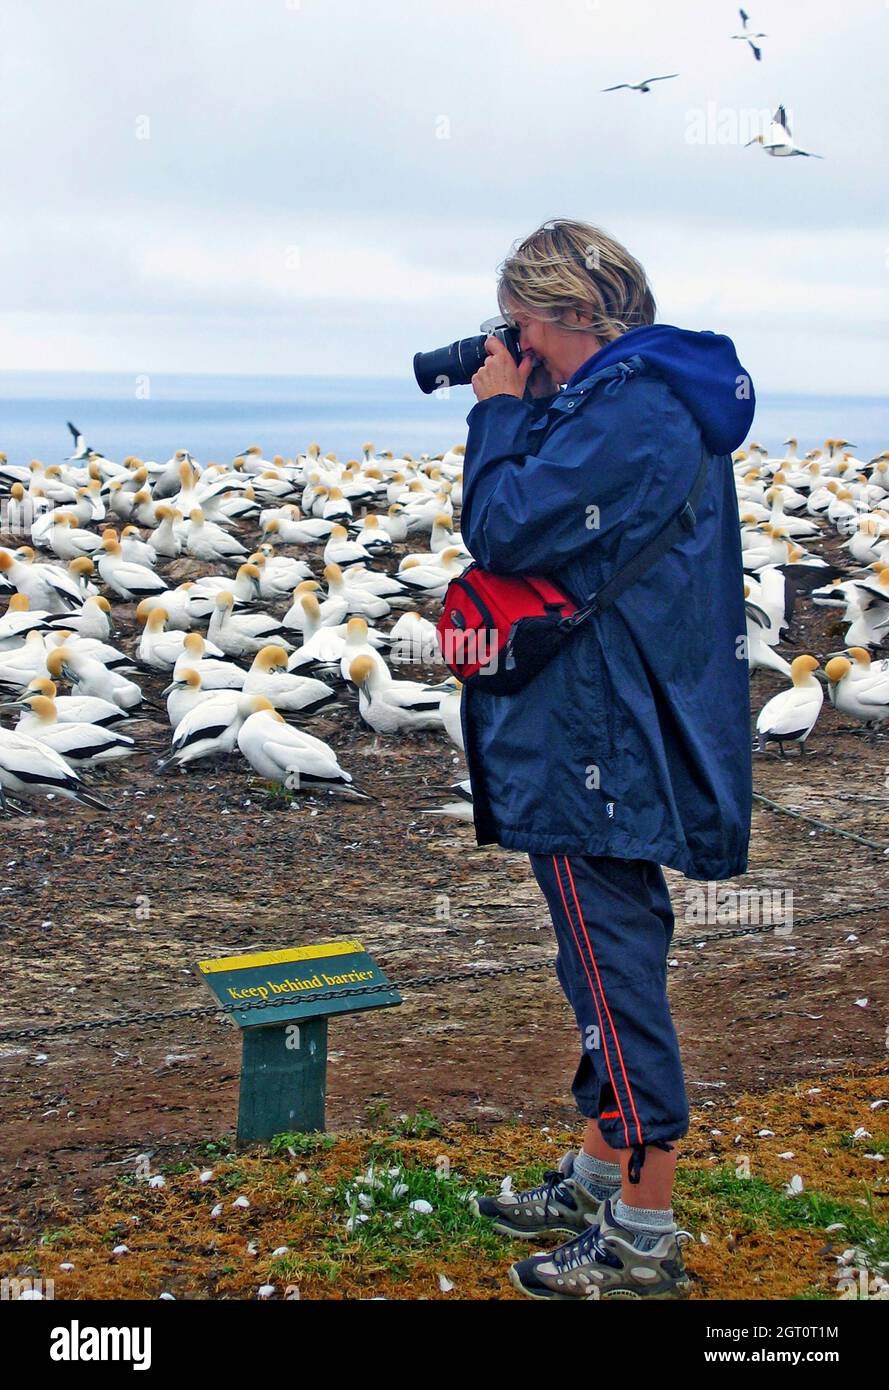 Una fotógrafa fotografía una colonia de Ganetos Australasianos en la Bahía Hawkes en la Isla Norte de Nueva Zelanda. La colonia de grandes aves marinas ha anidado en la zona desde el siglo XIX, atrayendo a observadores de aves y fotógrafos de aves. Foto de stock